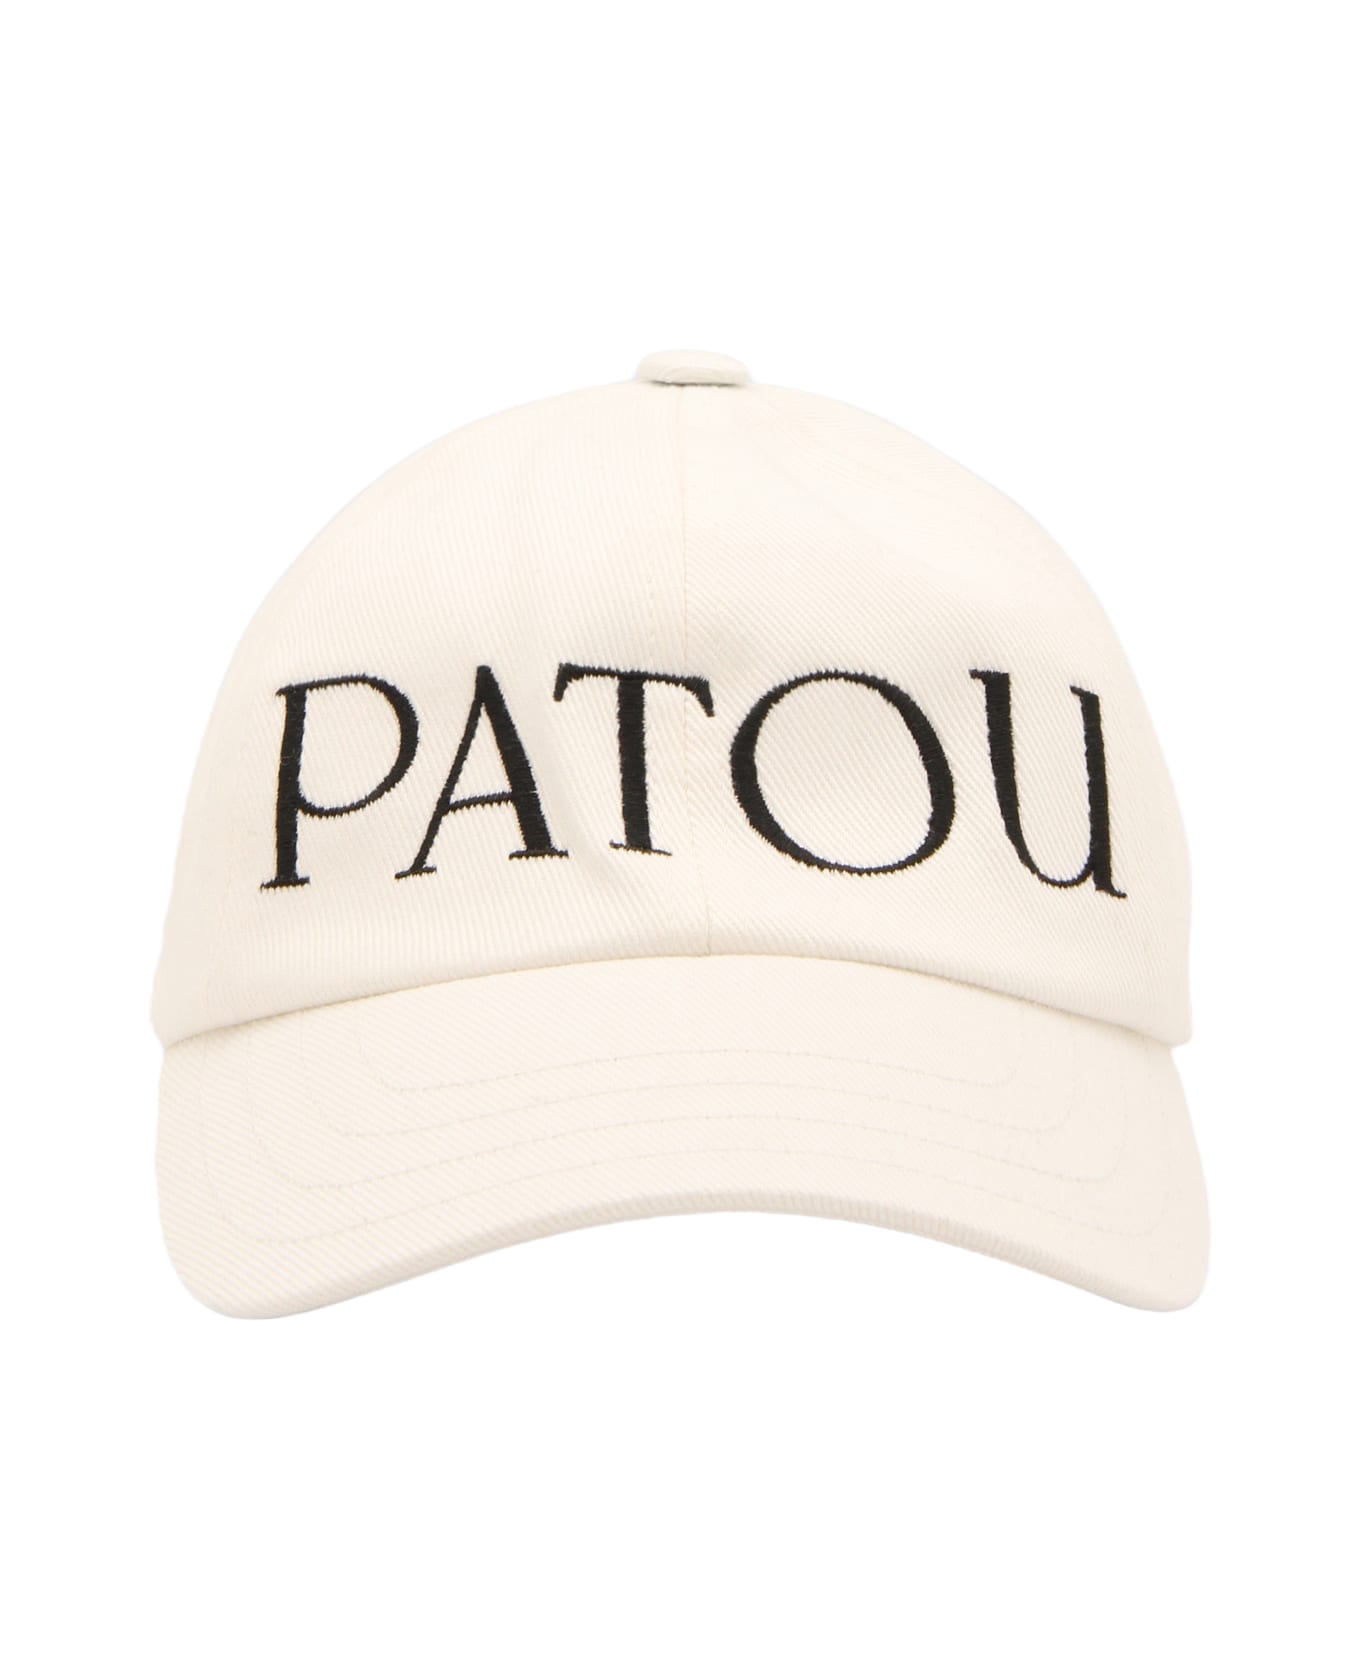 Patou White And Black Cotton Baseball Cap - Beige 帽子